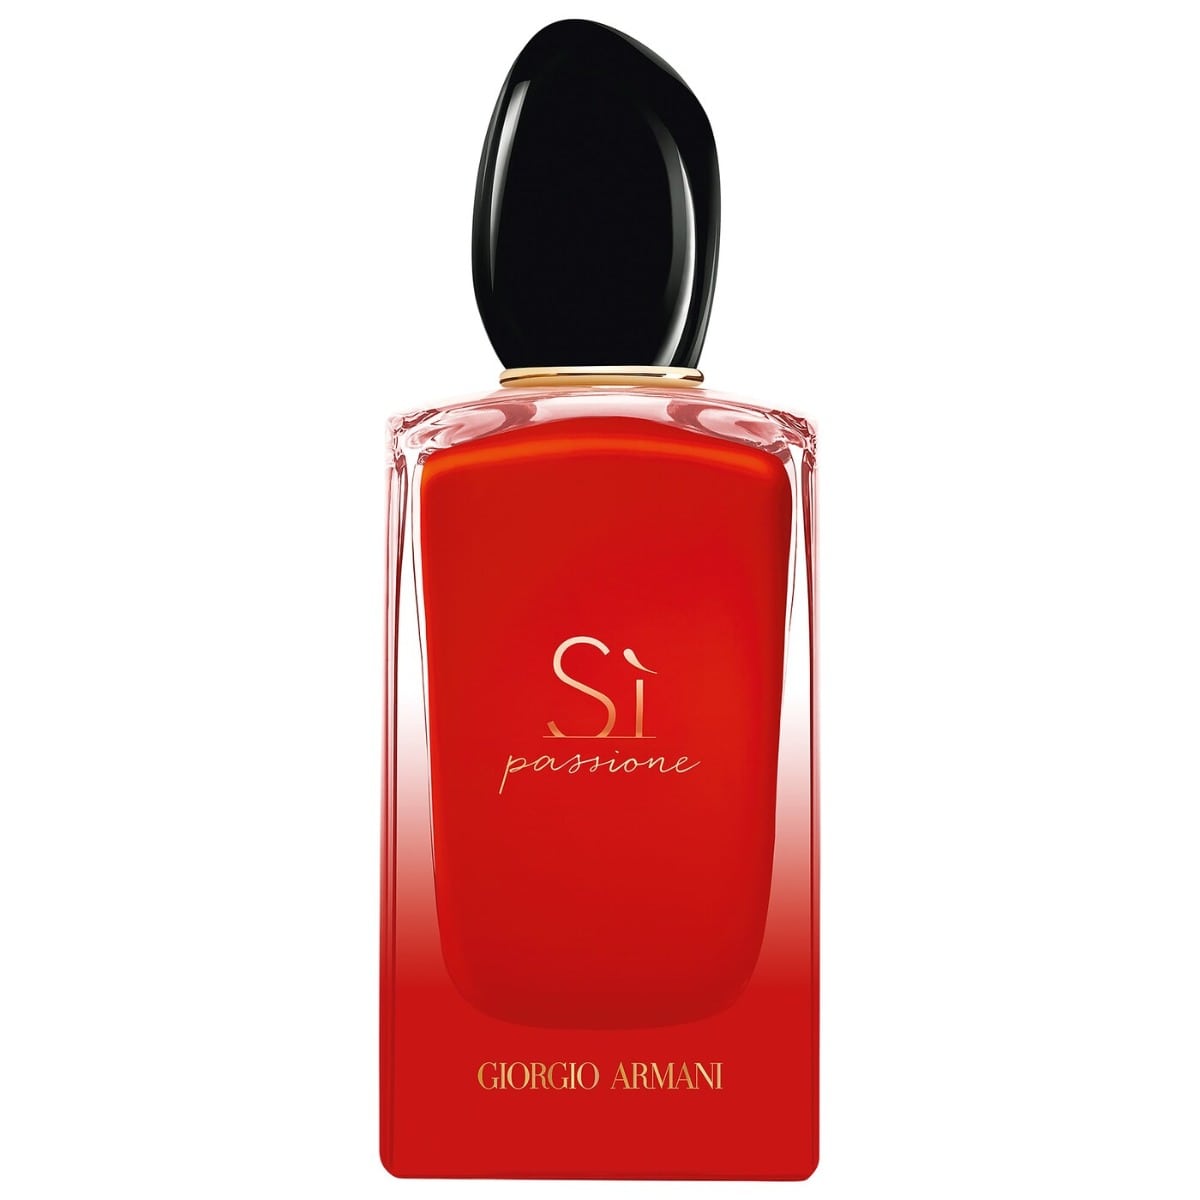 Giorgio Armani Si Passione Intense For Women Edp Spray 100 ml-Perfume - Allurebeautypk